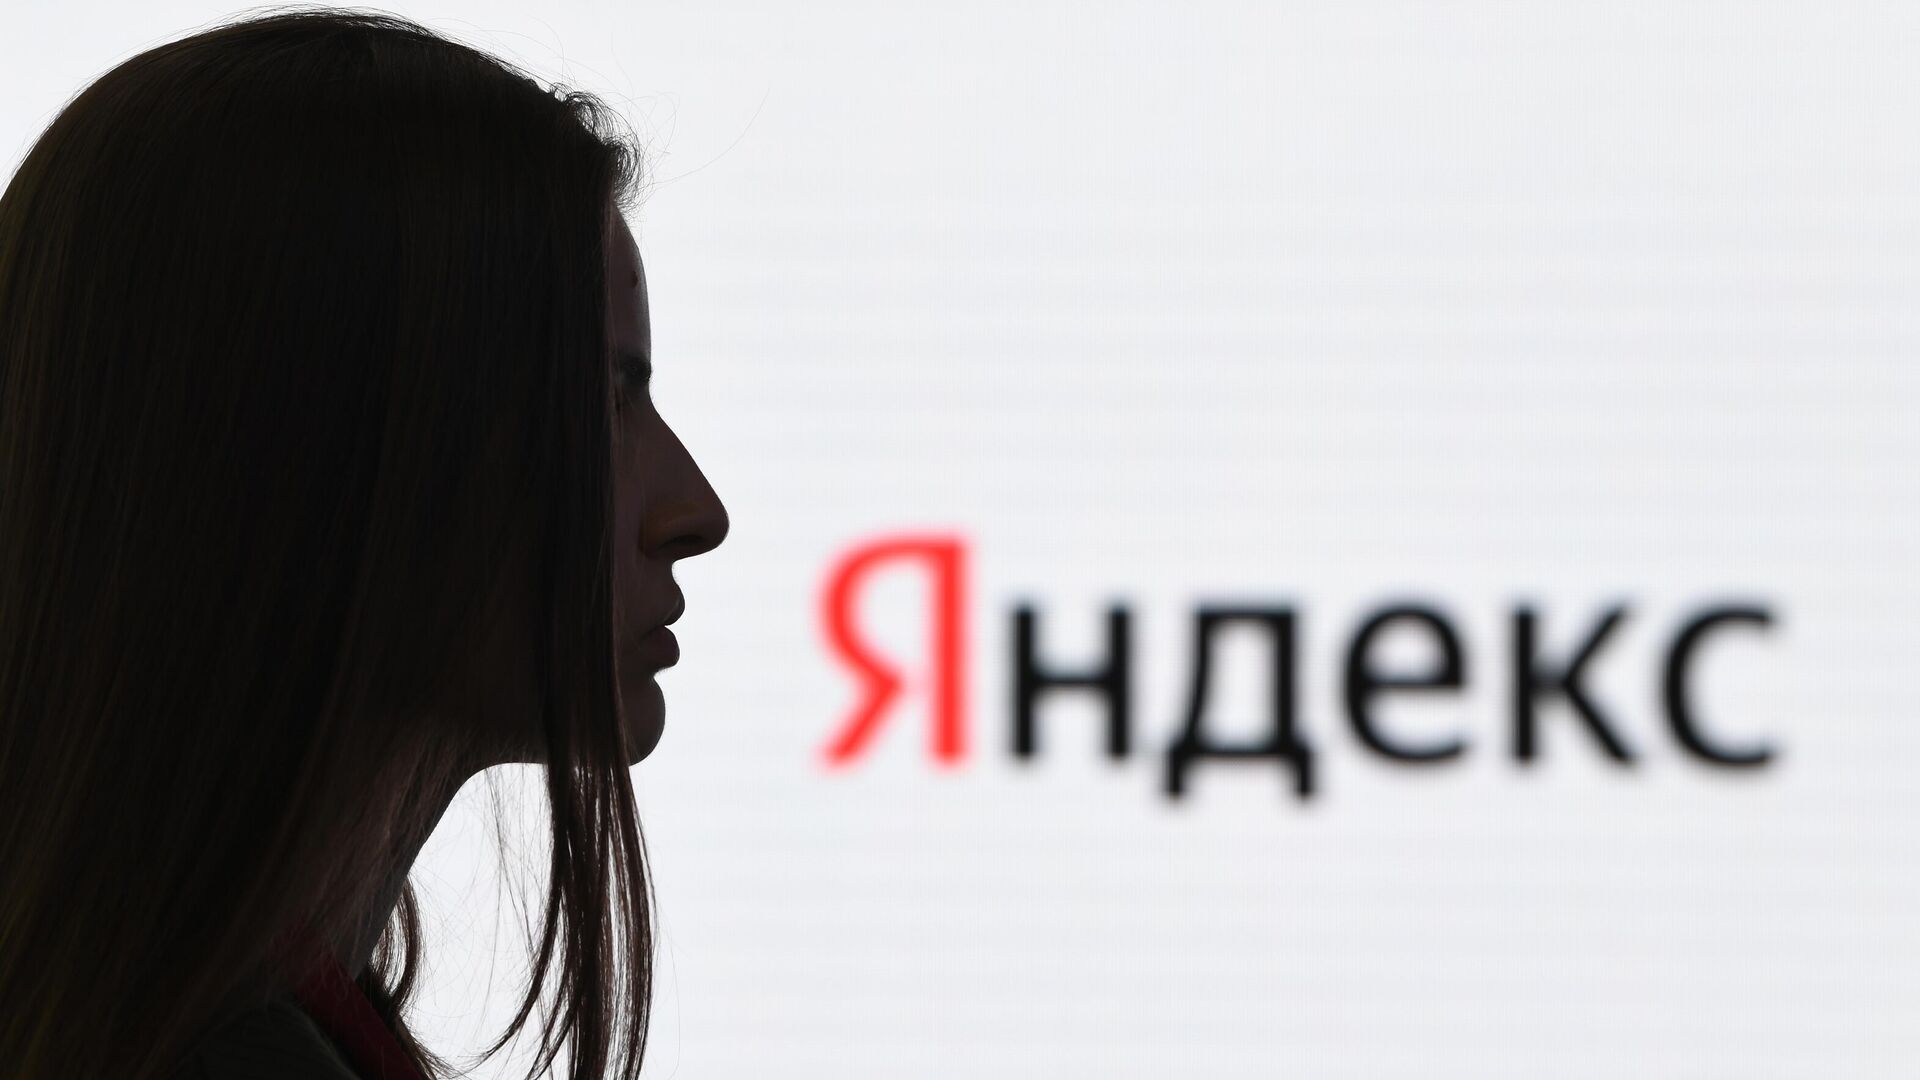 В работе "Яндекса" произошел сбой